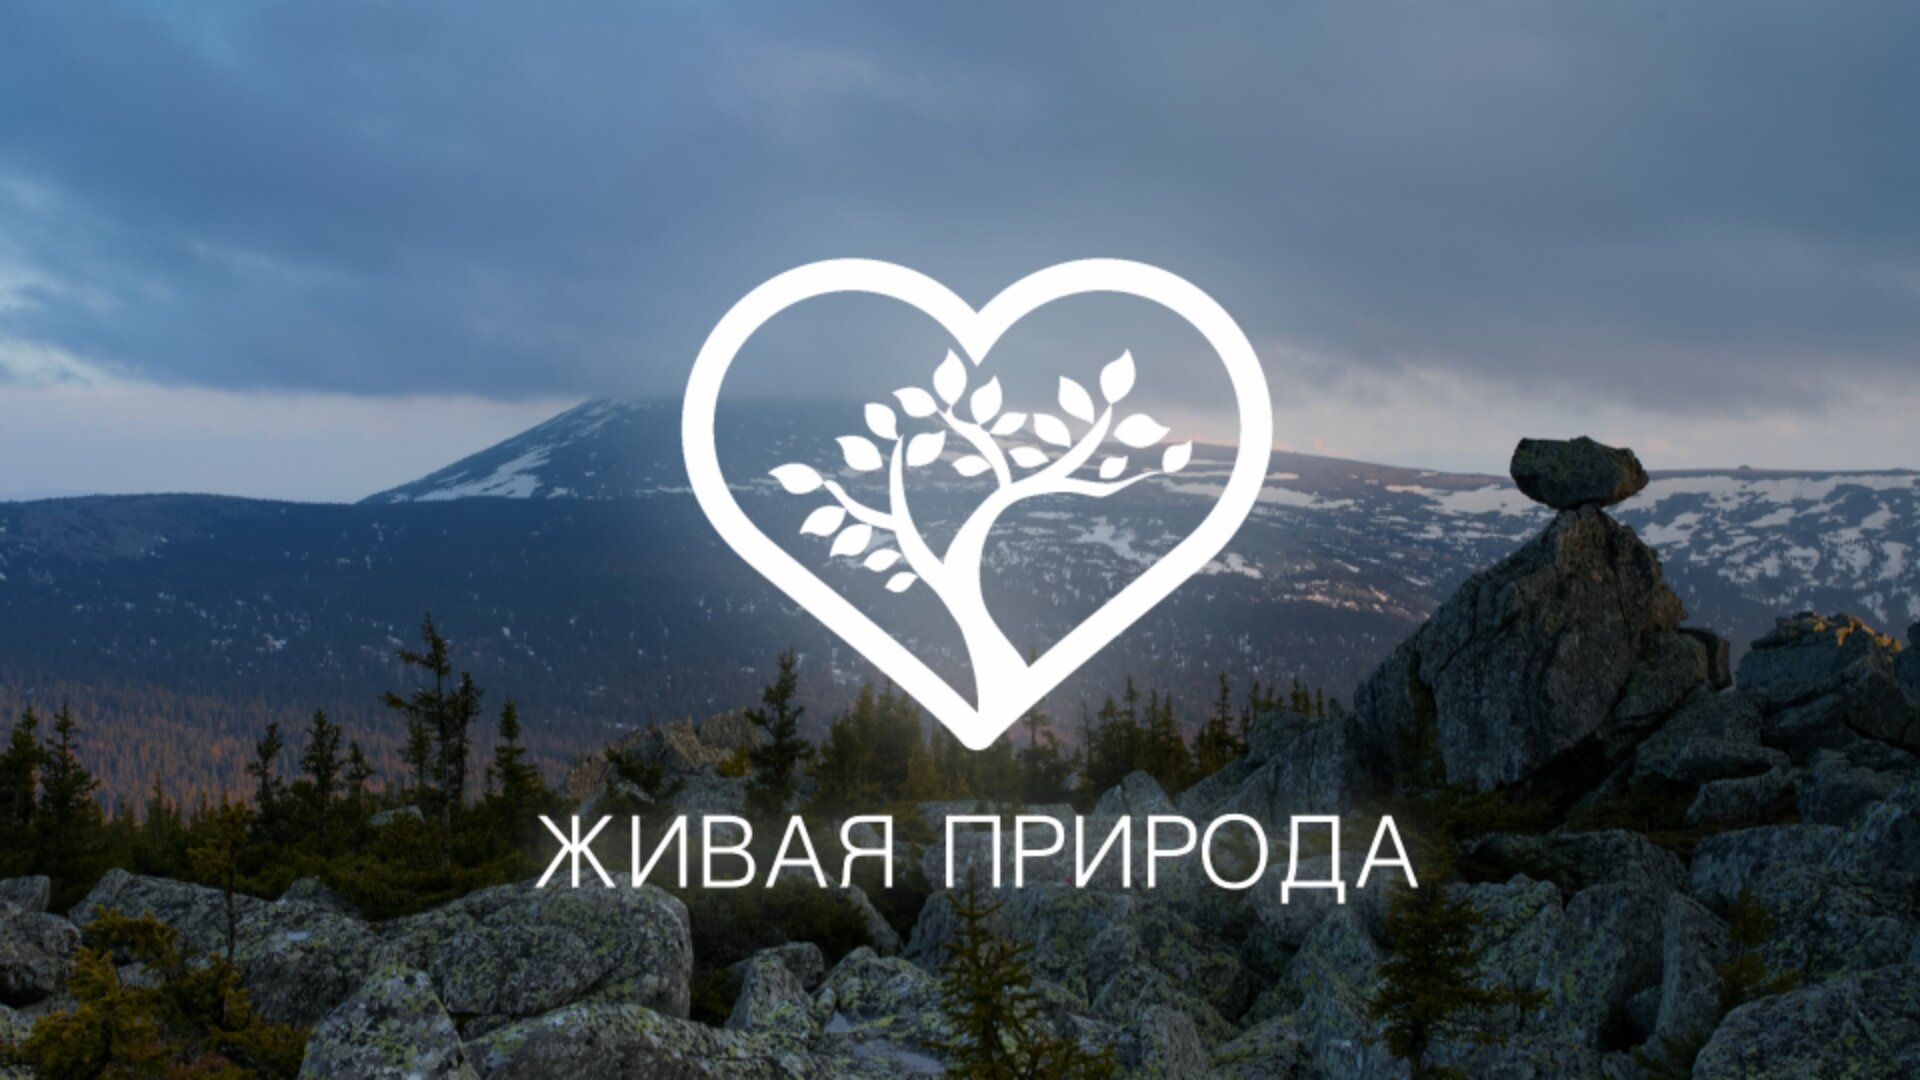 Живая природа - телеканал о природе России и мира.